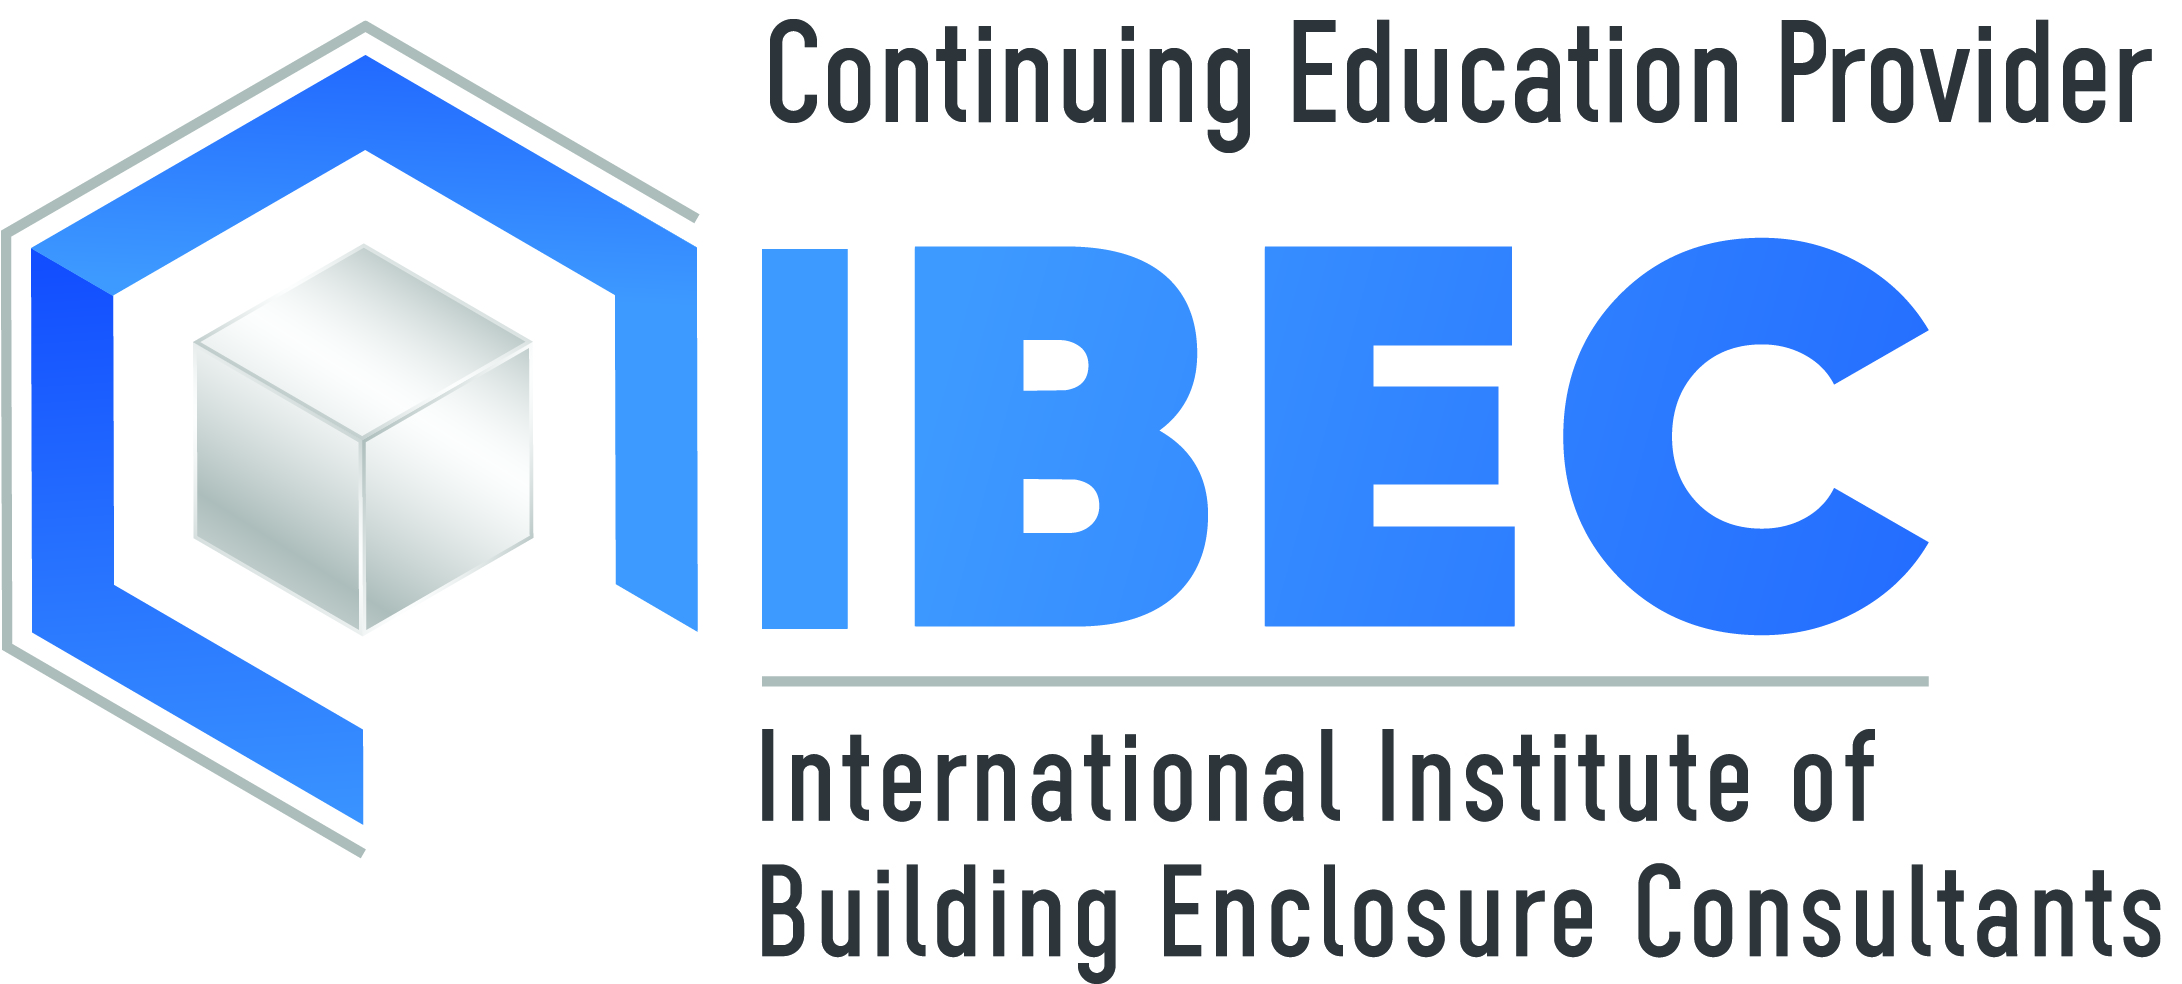 IIBEC at CONSTRUCT